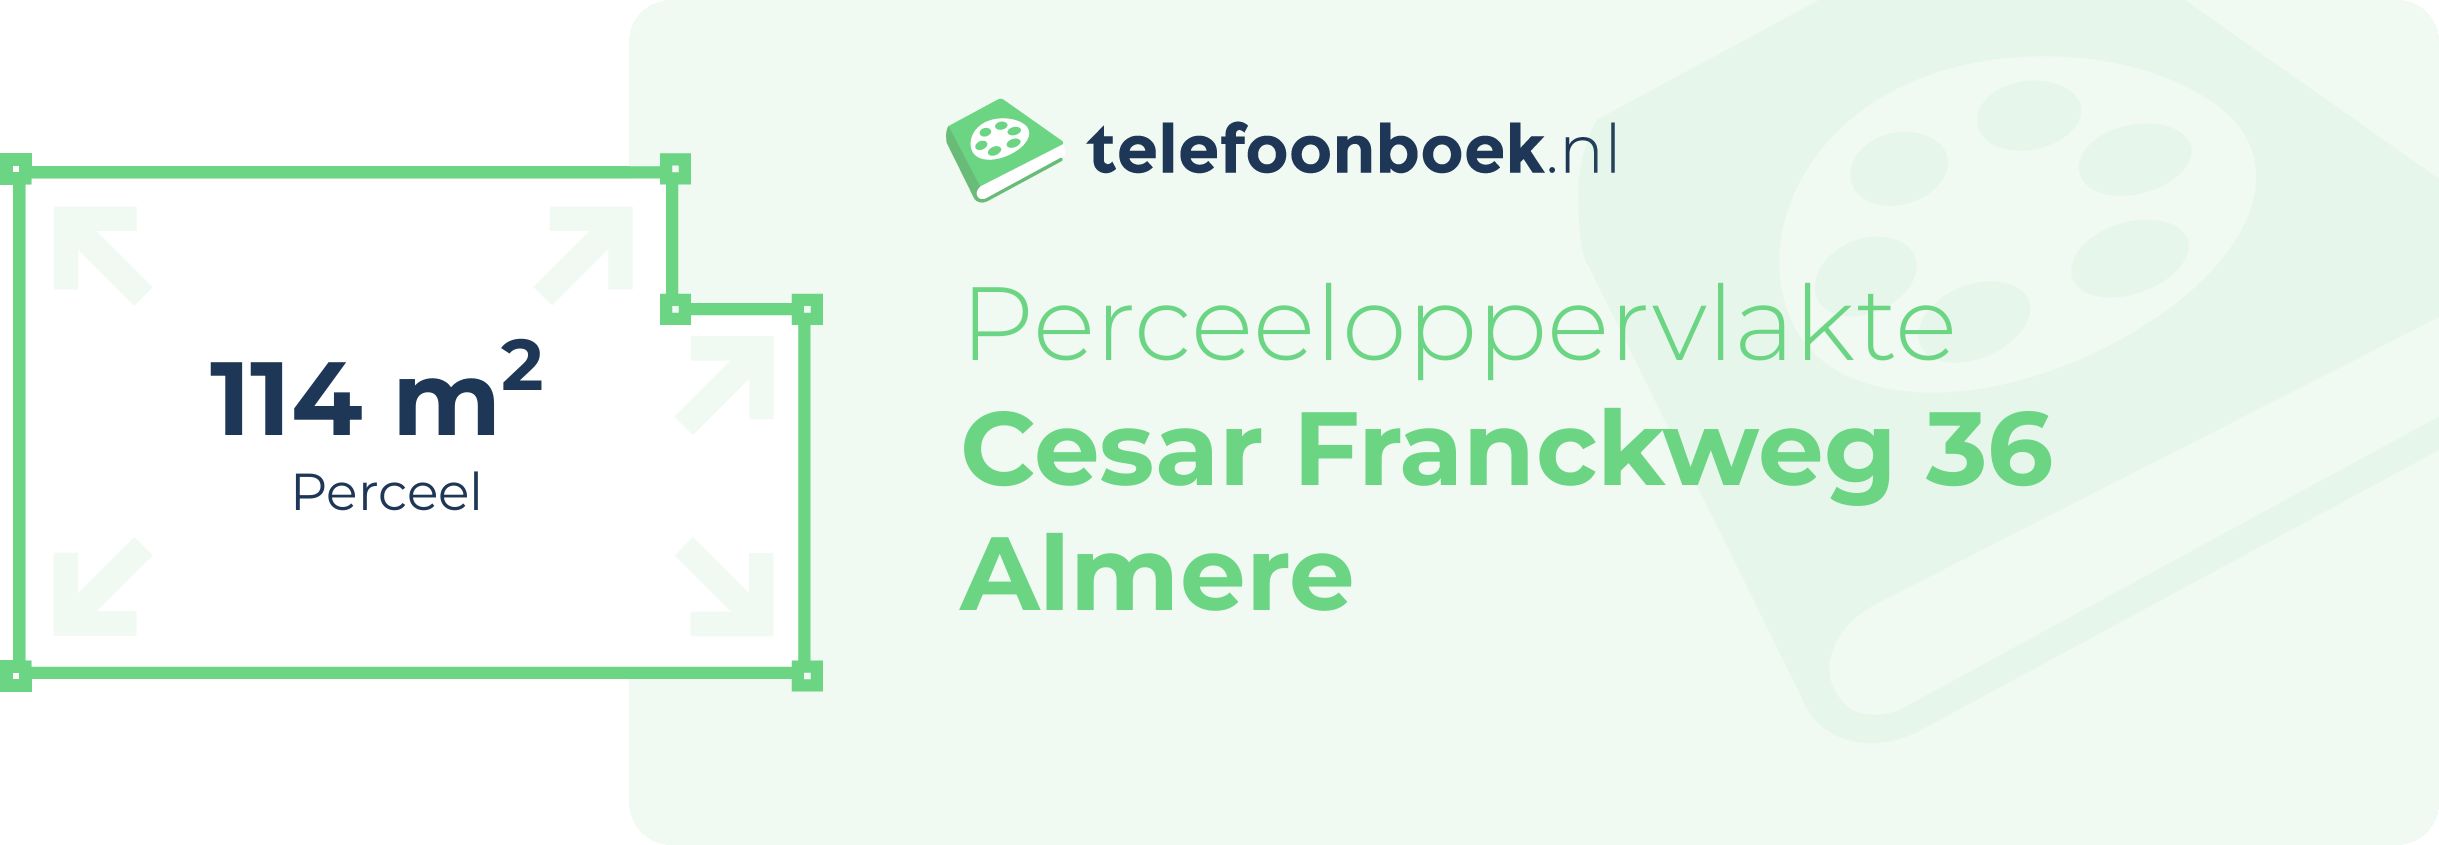 Perceeloppervlakte Cesar Franckweg 36 Almere